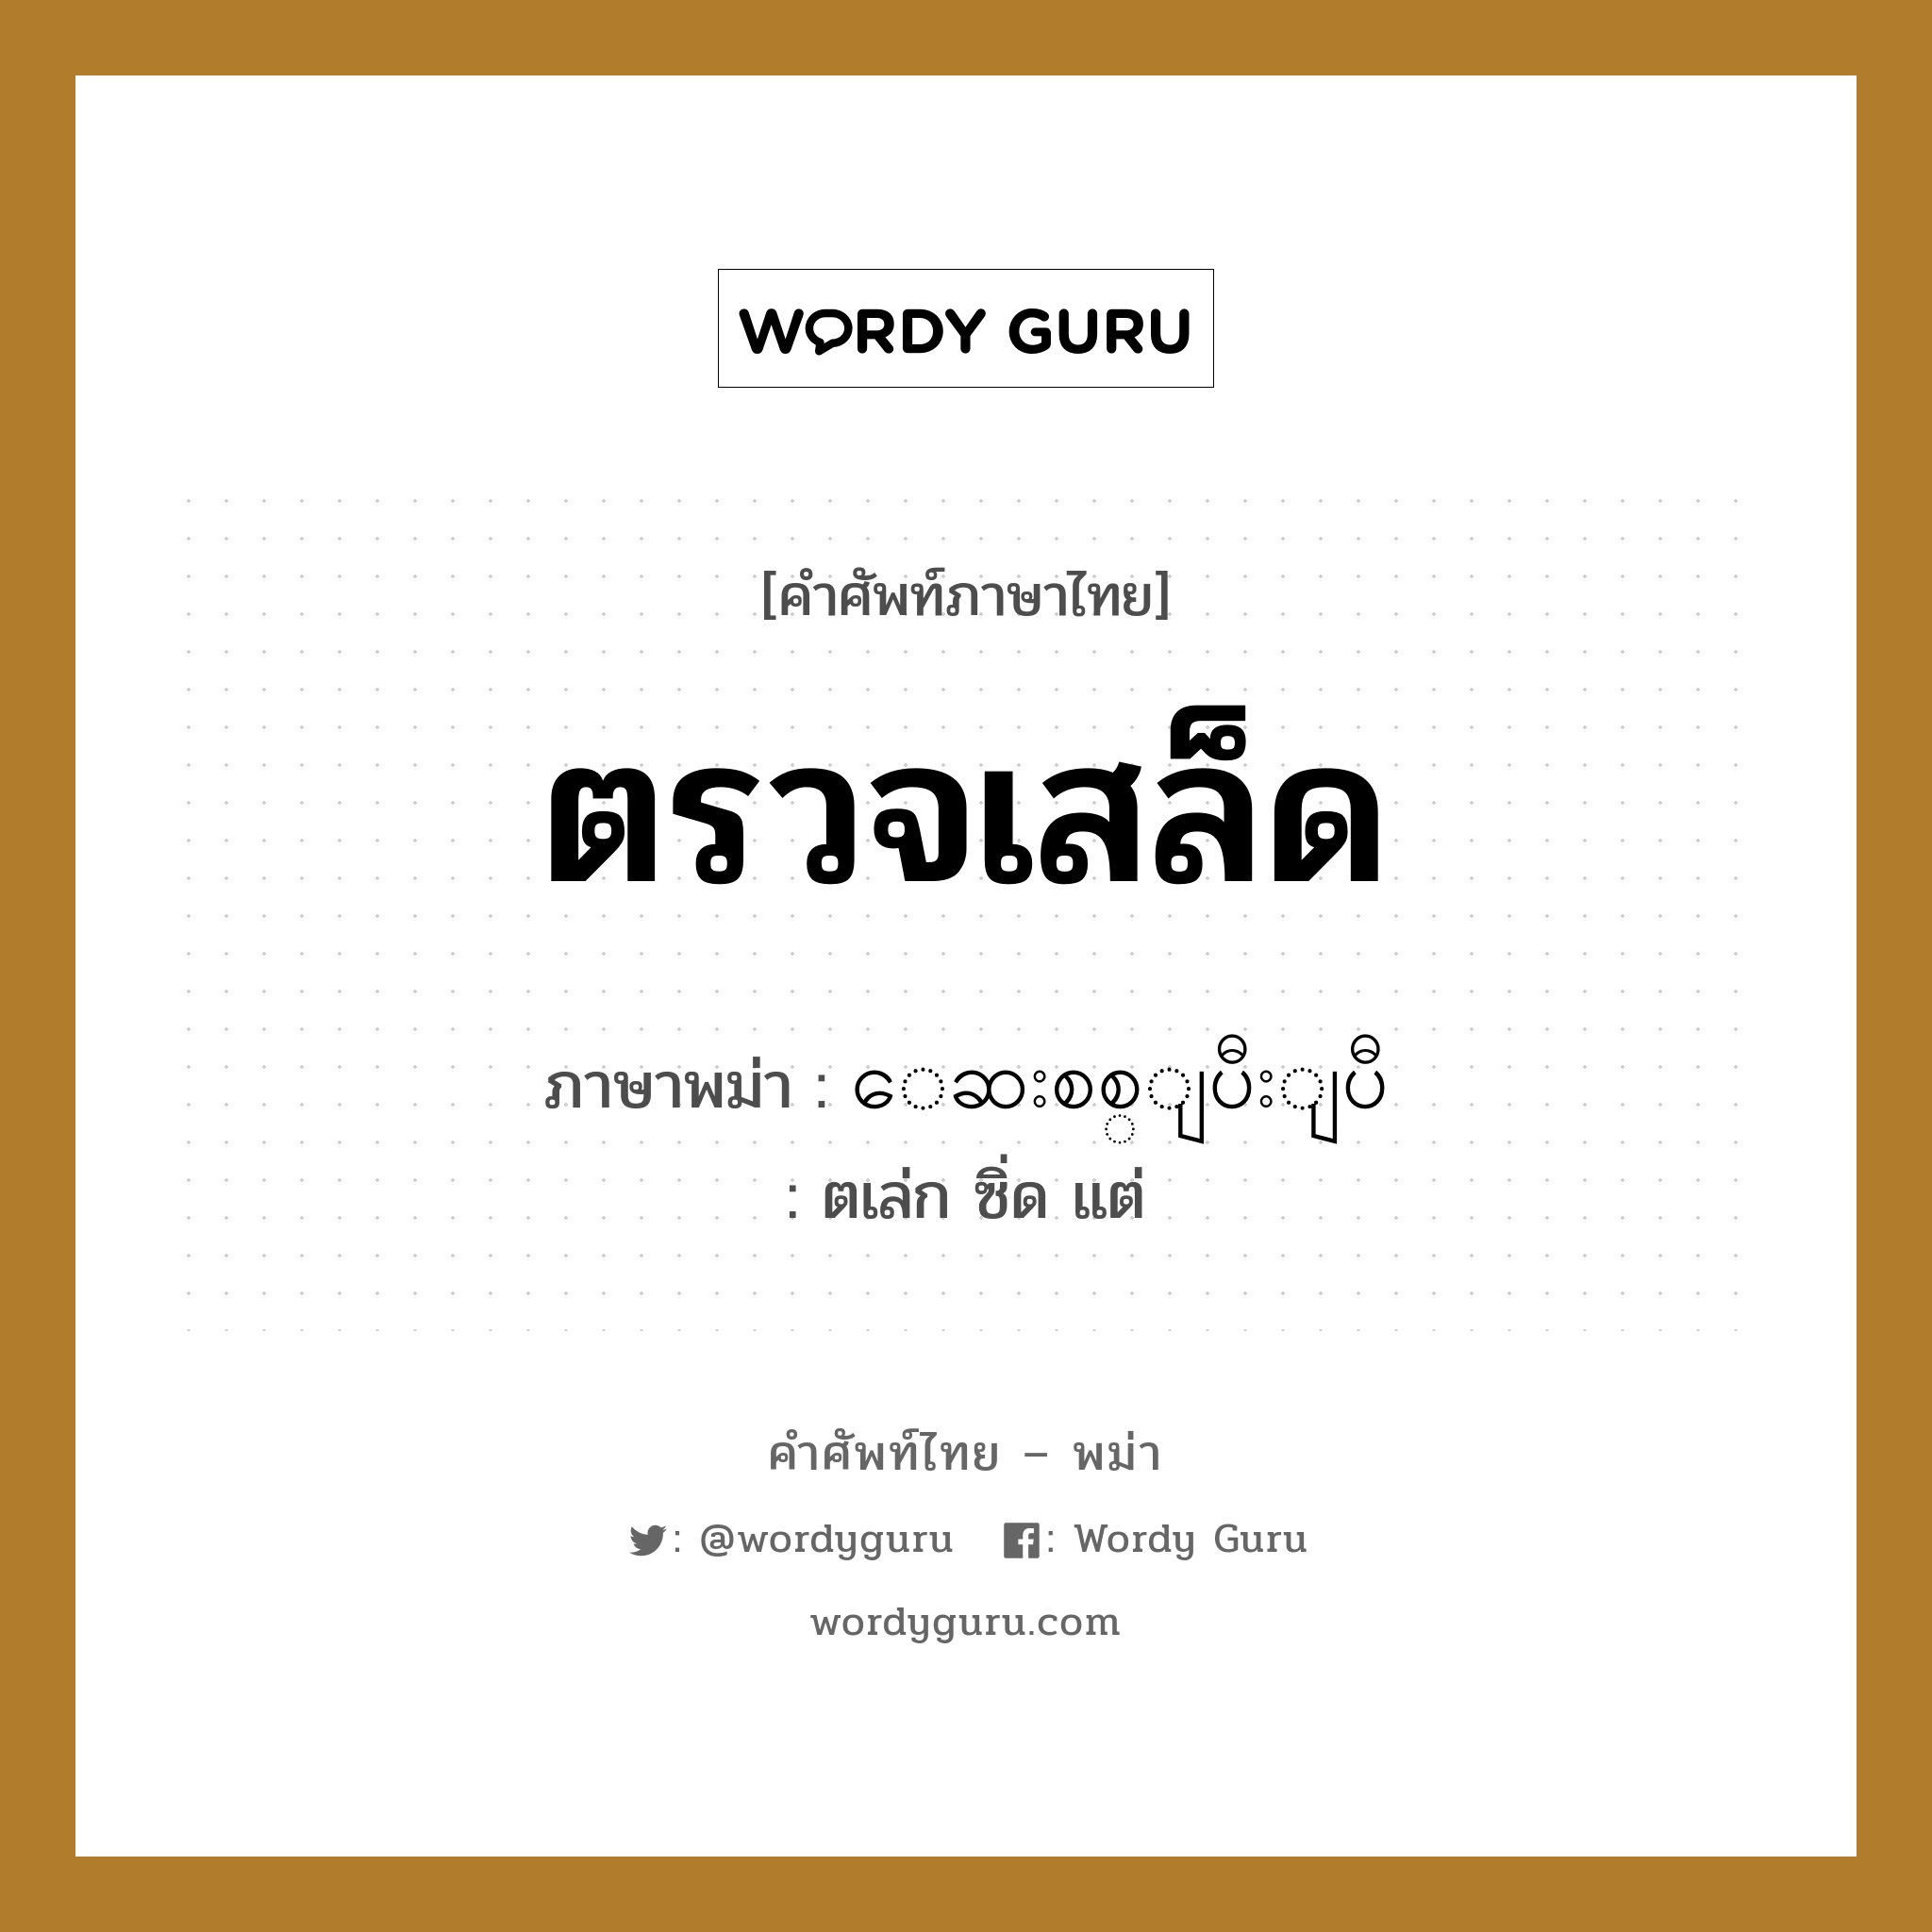 ตรวจเสล็ด ภาษาพม่าคืออะไร, คำศัพท์ภาษาไทย - พม่า ตรวจเสล็ด ภาษาพม่า ေဆးစစ္ျပီးျပီ หมวด หมวดโรคและยารักษา ตเล่ก ซิ่ด แต่ หมวด หมวดโรคและยารักษา